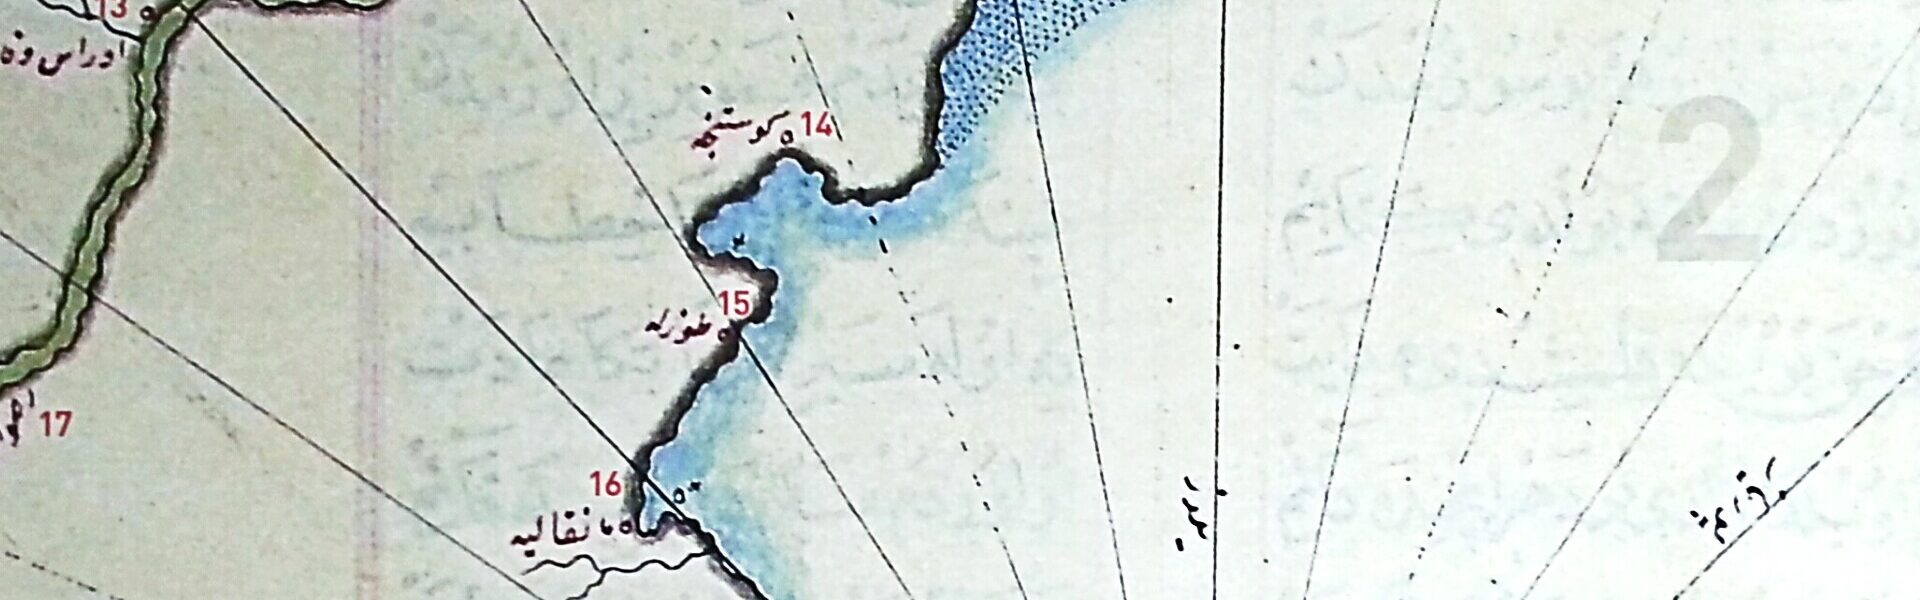 Dobrogea şi misterioasa hartă a lui Piri Reis